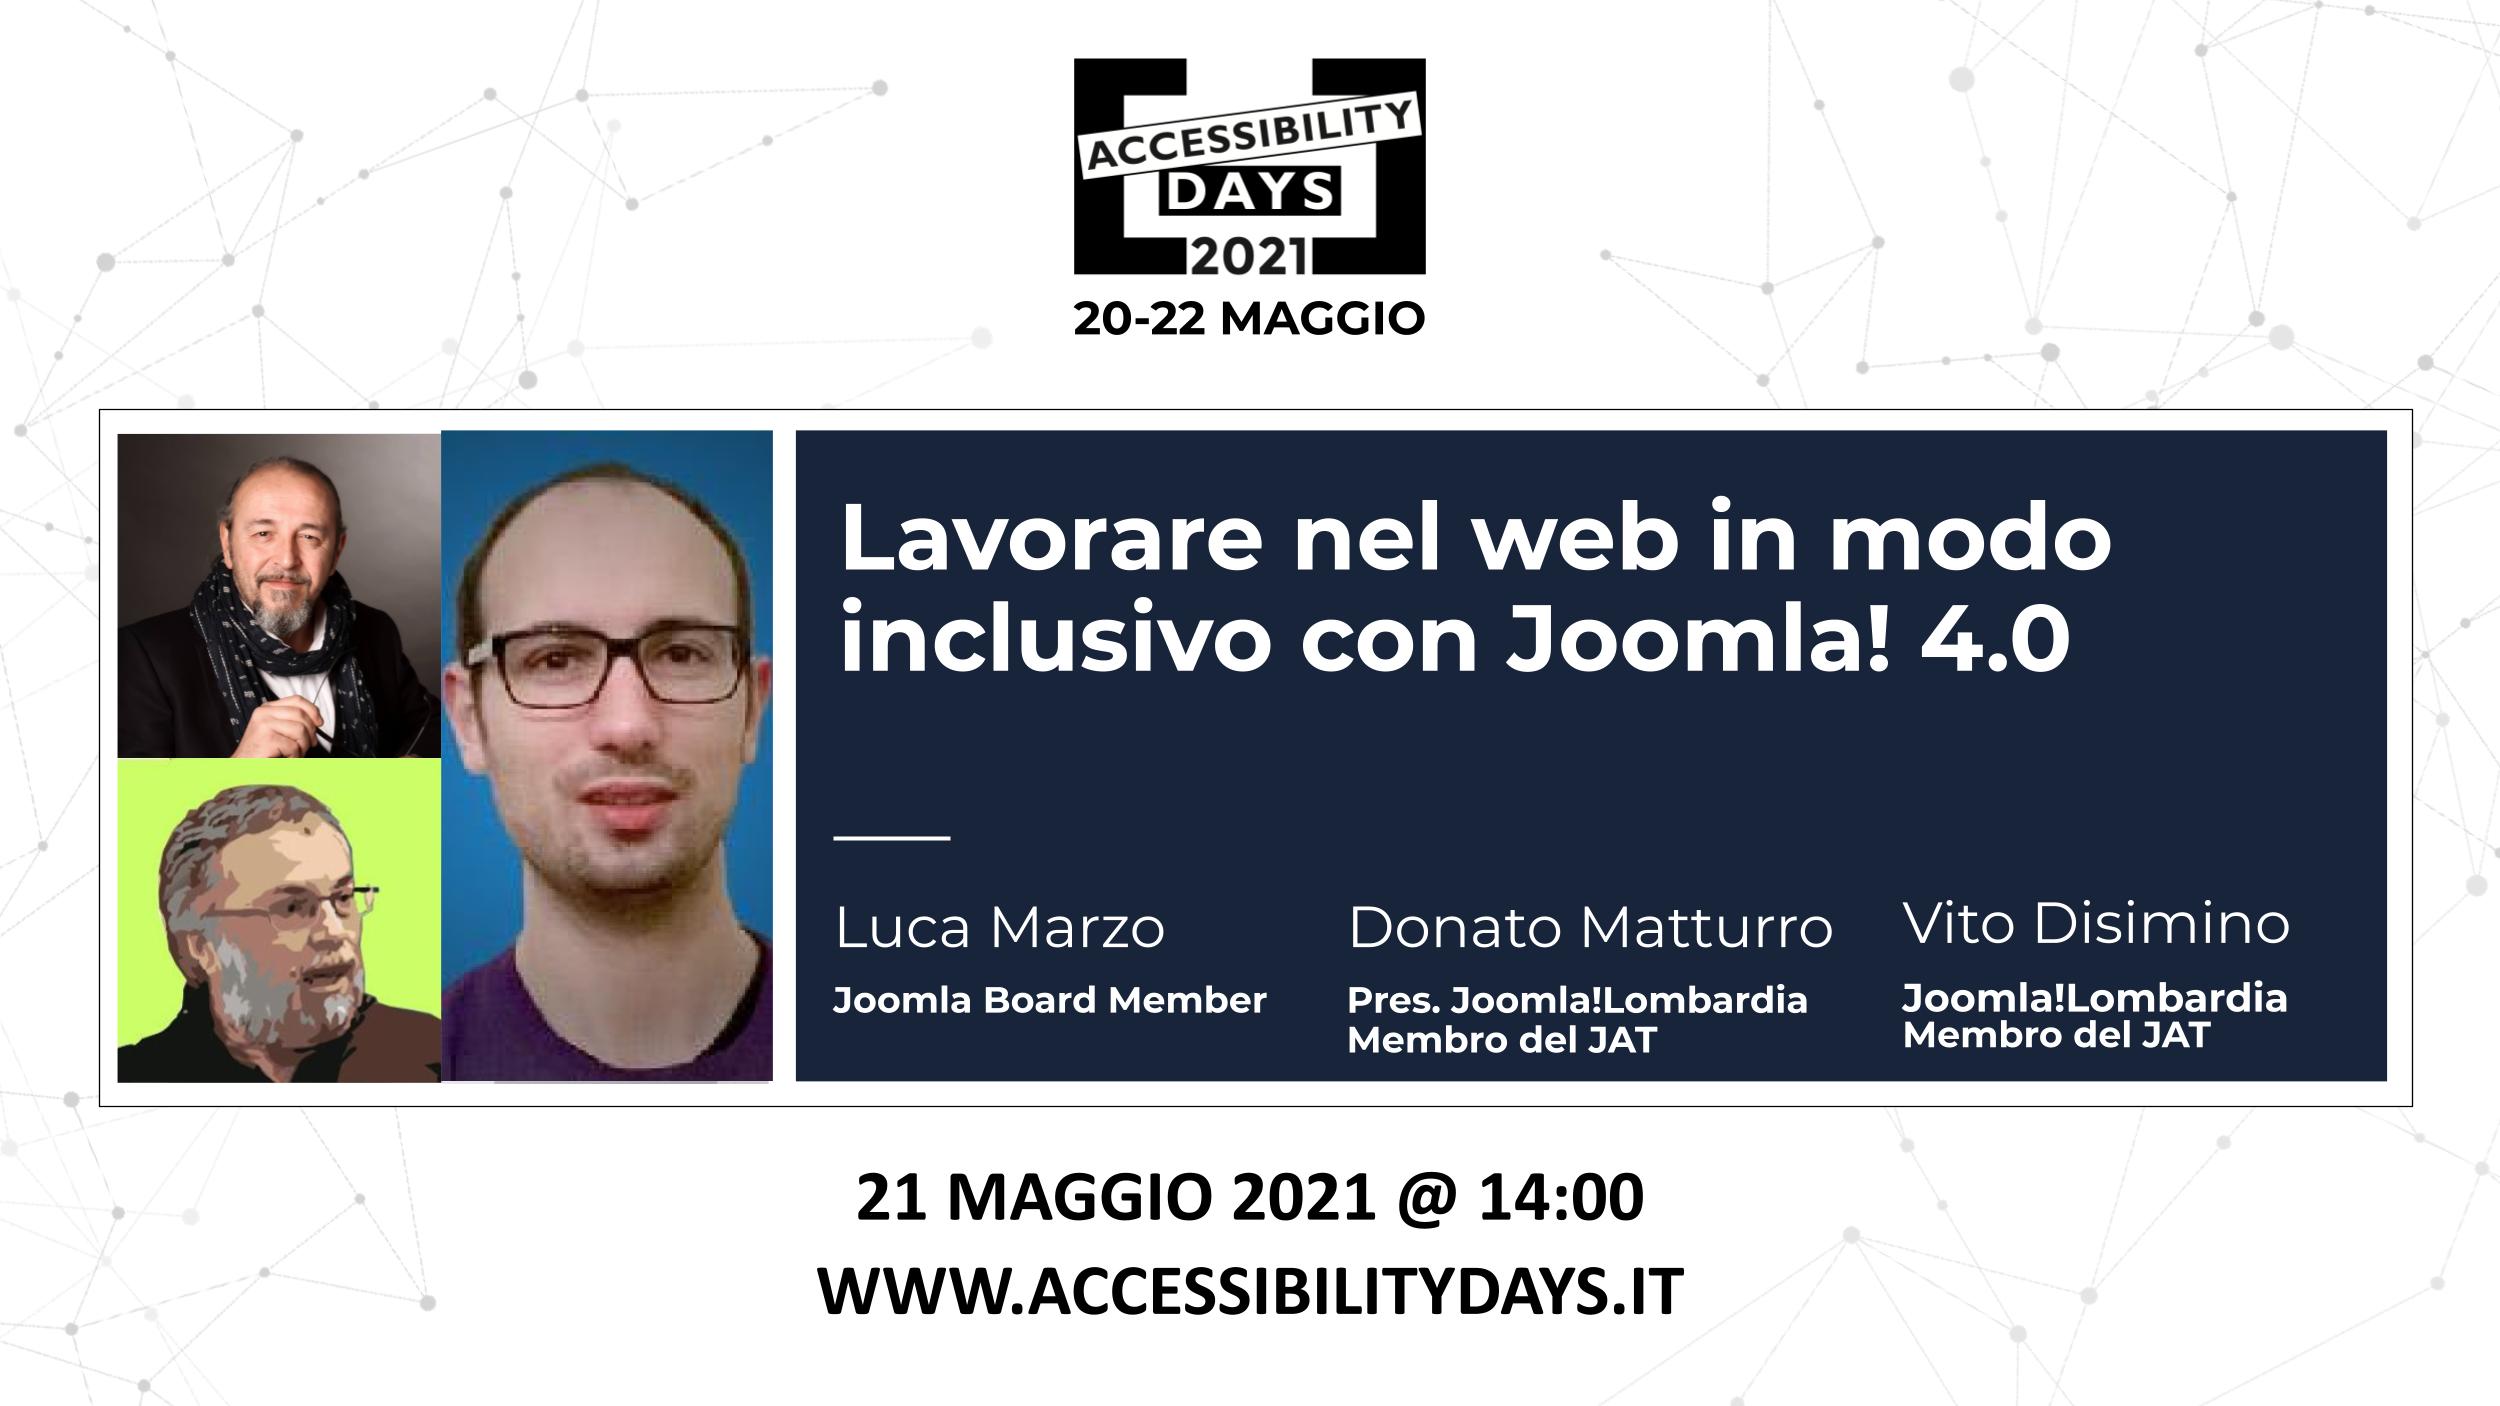 Lavorare nel web in modo inclusivo con Joomla 4.0 Donato Matturro